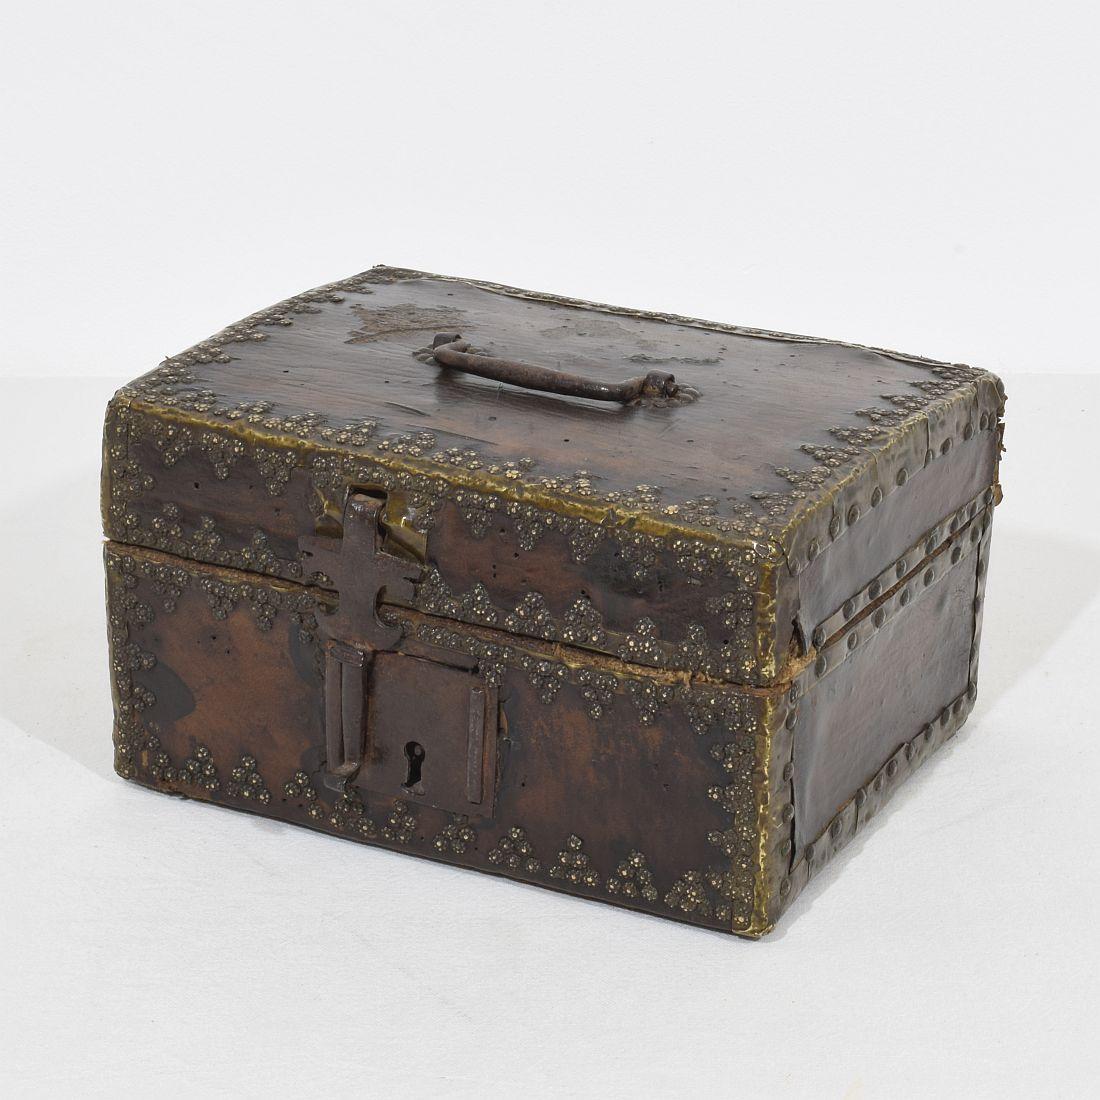 Boîte très ancienne recouverte de cuir et de décorations métalliques. 
Une trouvaille rare.
France, vers 1600-1700.
Usé et quelques pertes.